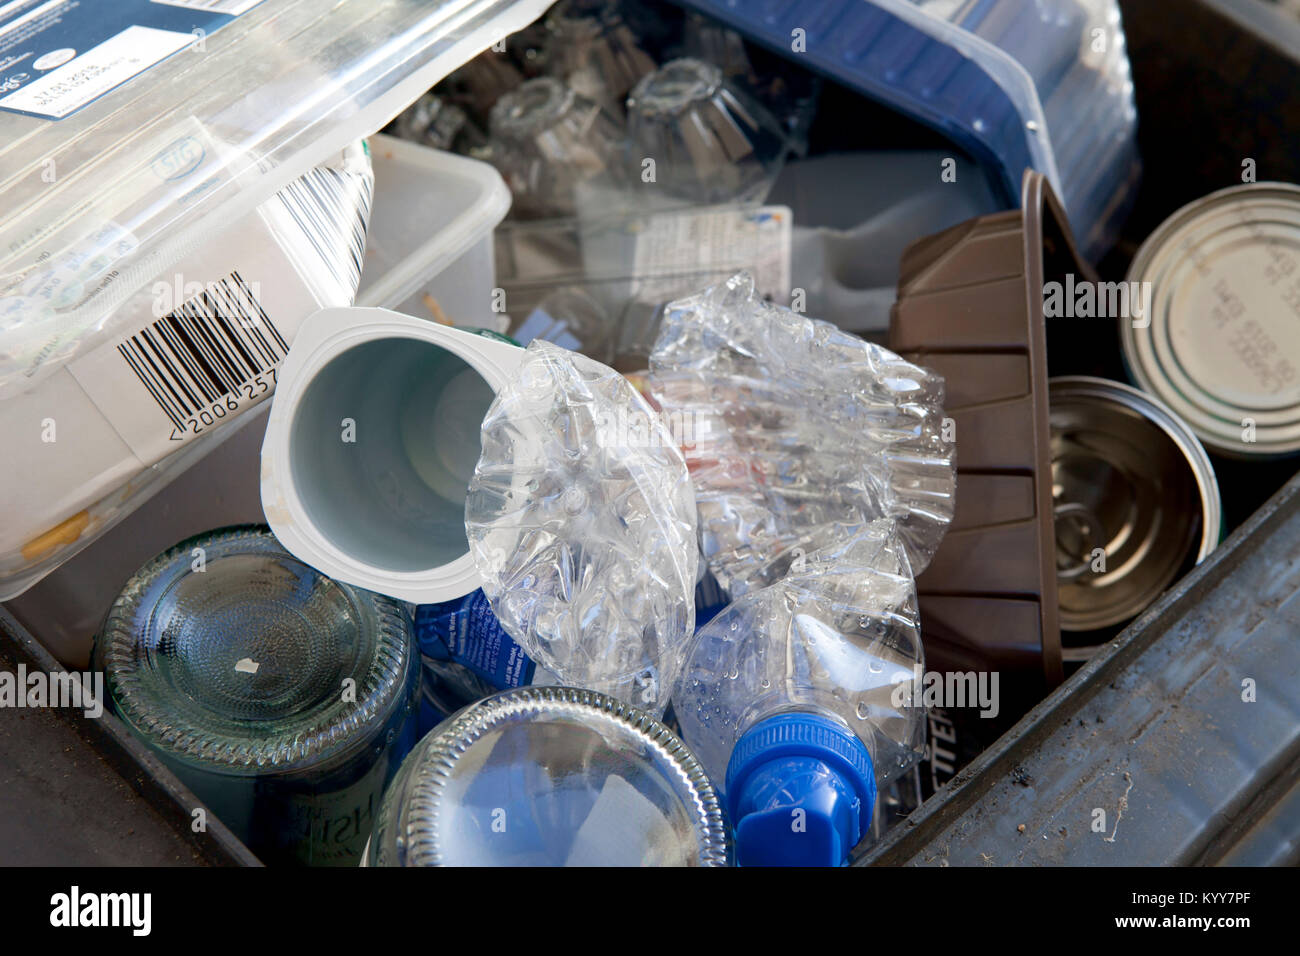 Wheelie bin plein de recyclage des déchets domestiques, des bouteilles en verre, boîtes de conserve et de bouteilles en plastique, déchets de plastique, le recyclage. Banque D'Images